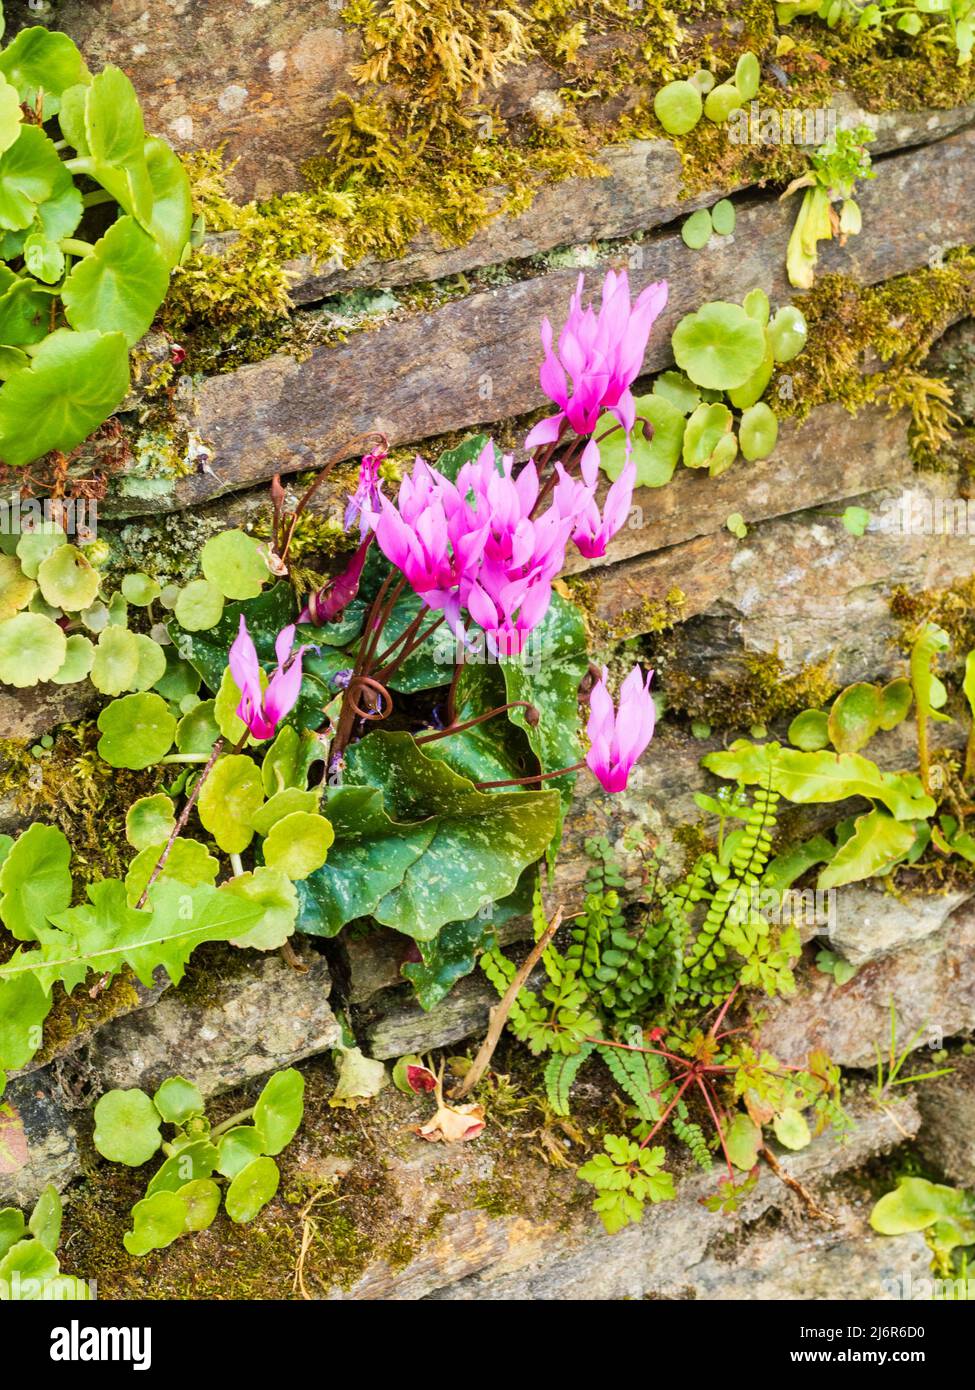 Pain de printemps, Cyclamen repandum à fleurs roses, poussant dans un étau dans un vieux mur de jardin en pierre sèche Banque D'Images